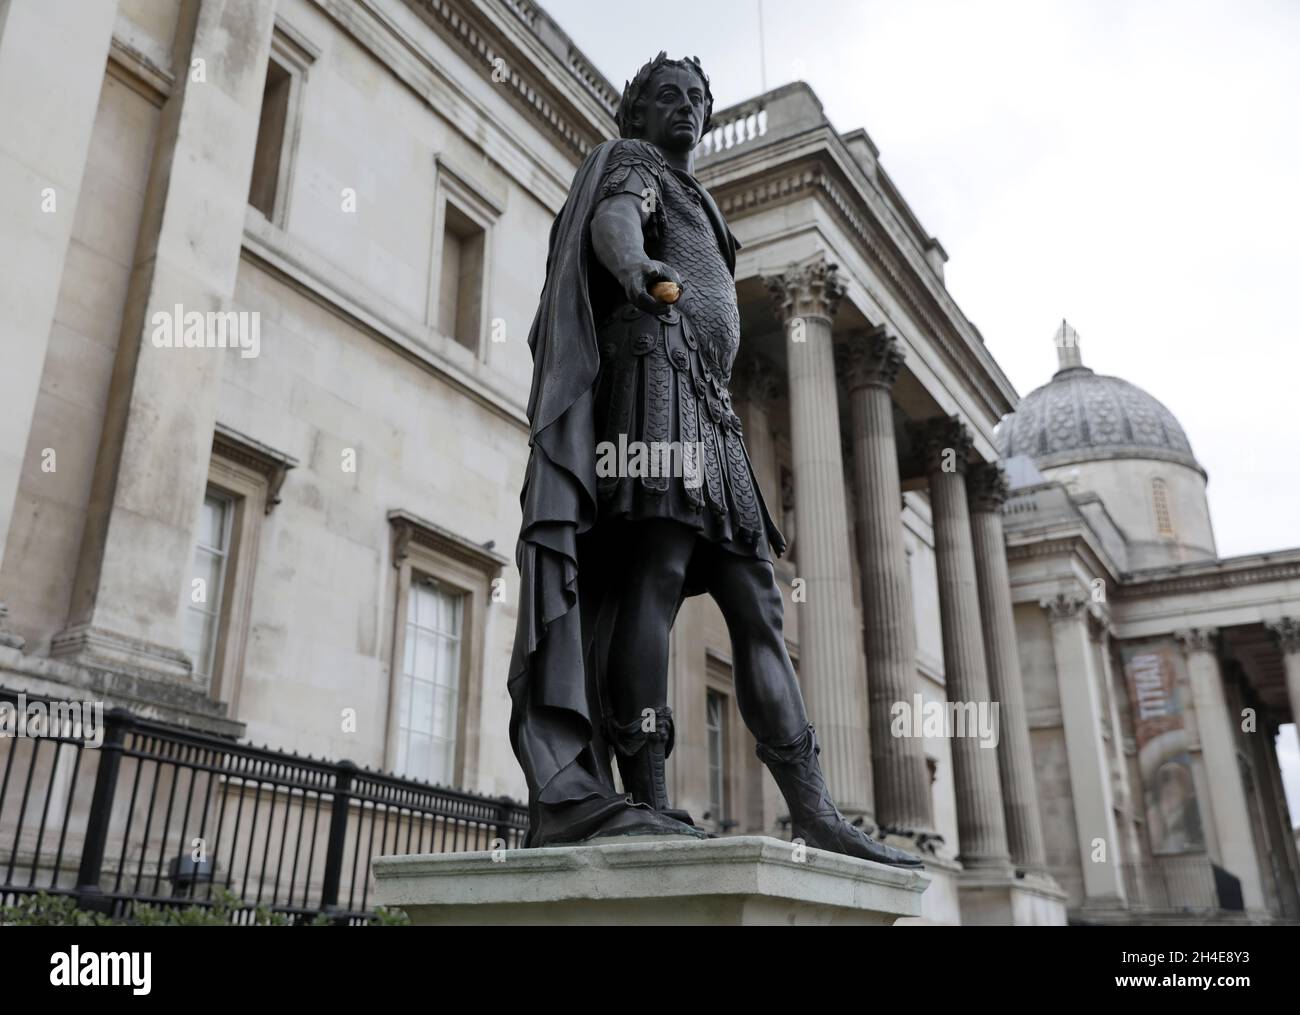 Eine Statue von James II. Auf dem Trafalgar Square, eine auf einer Liste von Statuen, die von Black Lives Matter entfernt werden sollten, nachdem das Bristol-Denkmal für Edward Colston gestürzt und in den Hafen geworfen wurde. Bilddatum: Donnerstag, 11. Juni 2020. Stockfoto